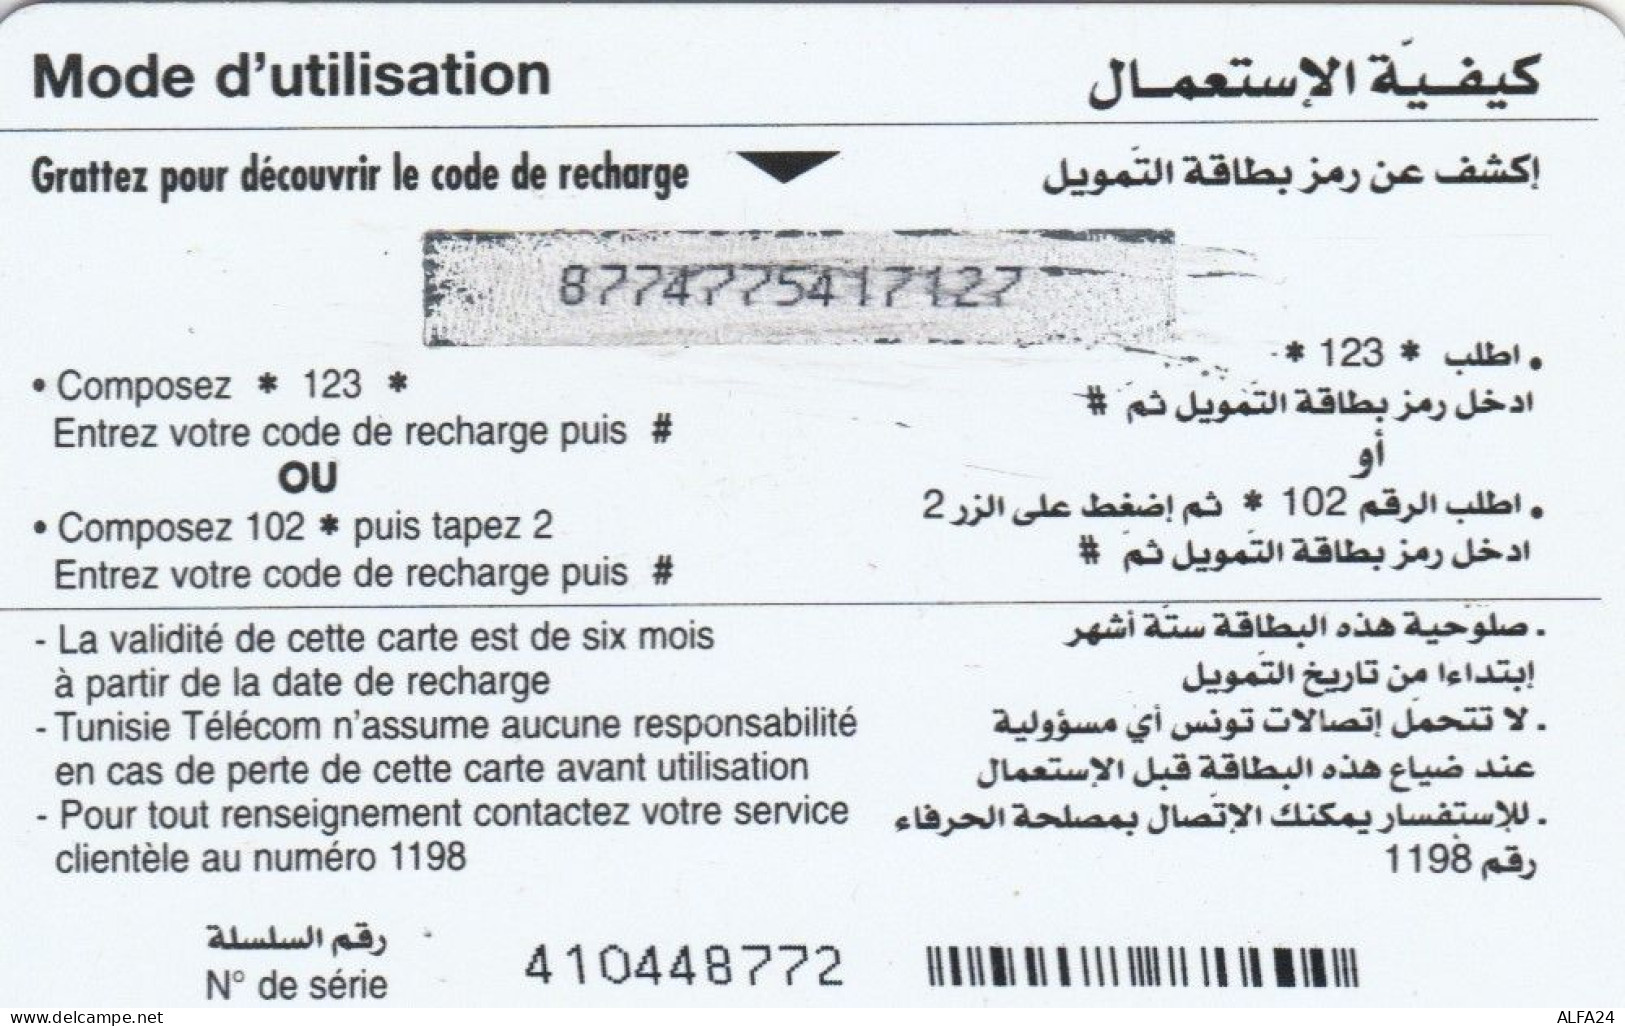 PREPAID PHONE CARD TUNISIA (E67.32.5 - Tunisia